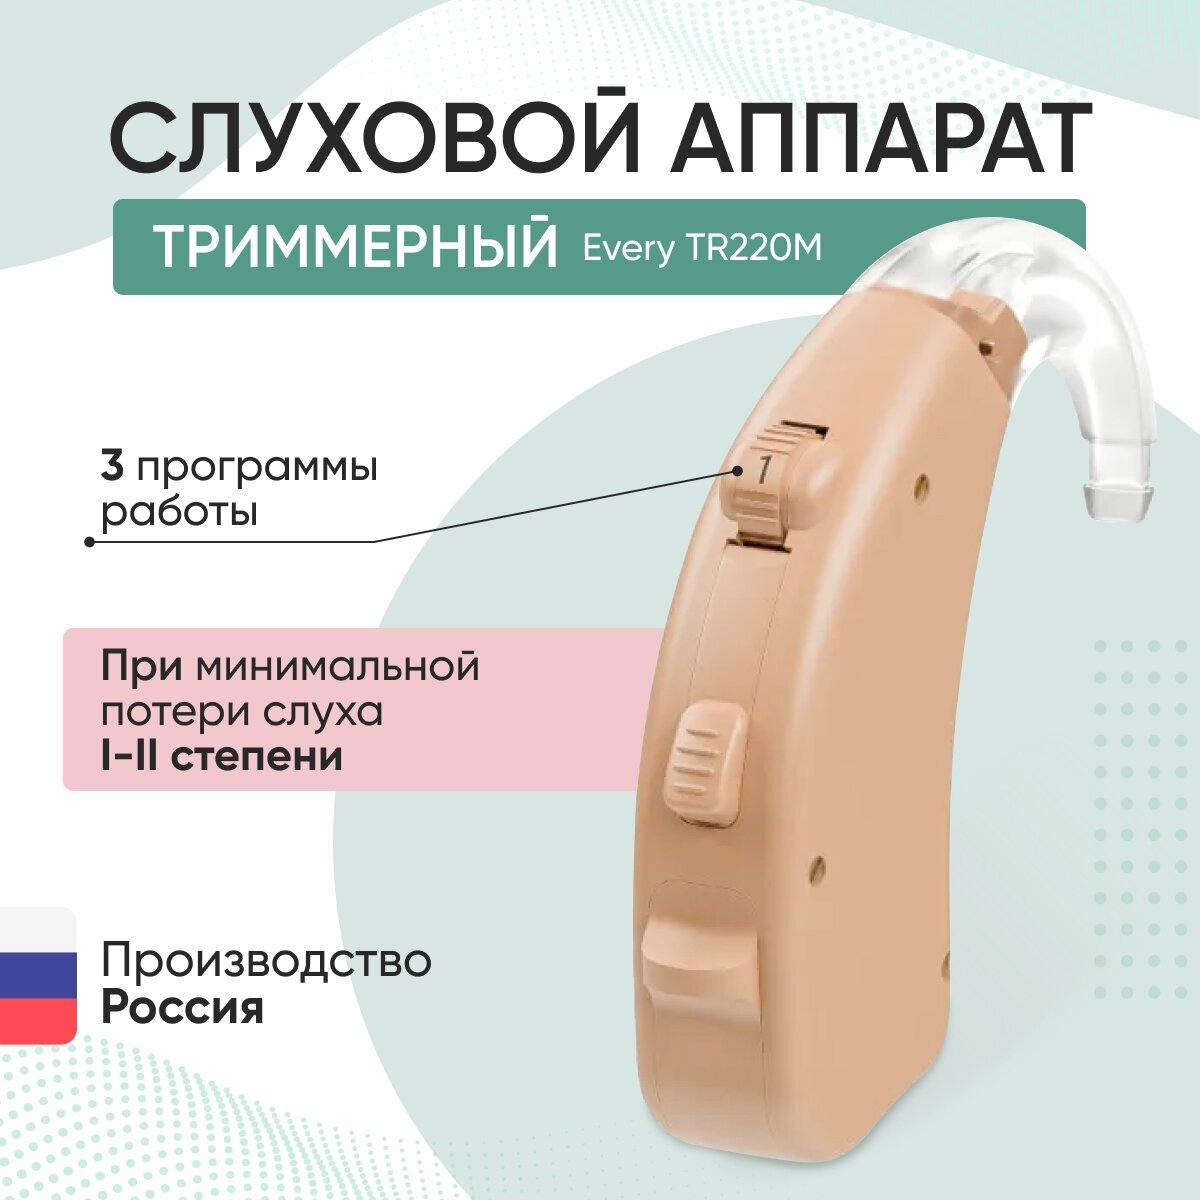 Триммерный слуховой аппарат Aurica Every TR220M для I-II степени потери слуха